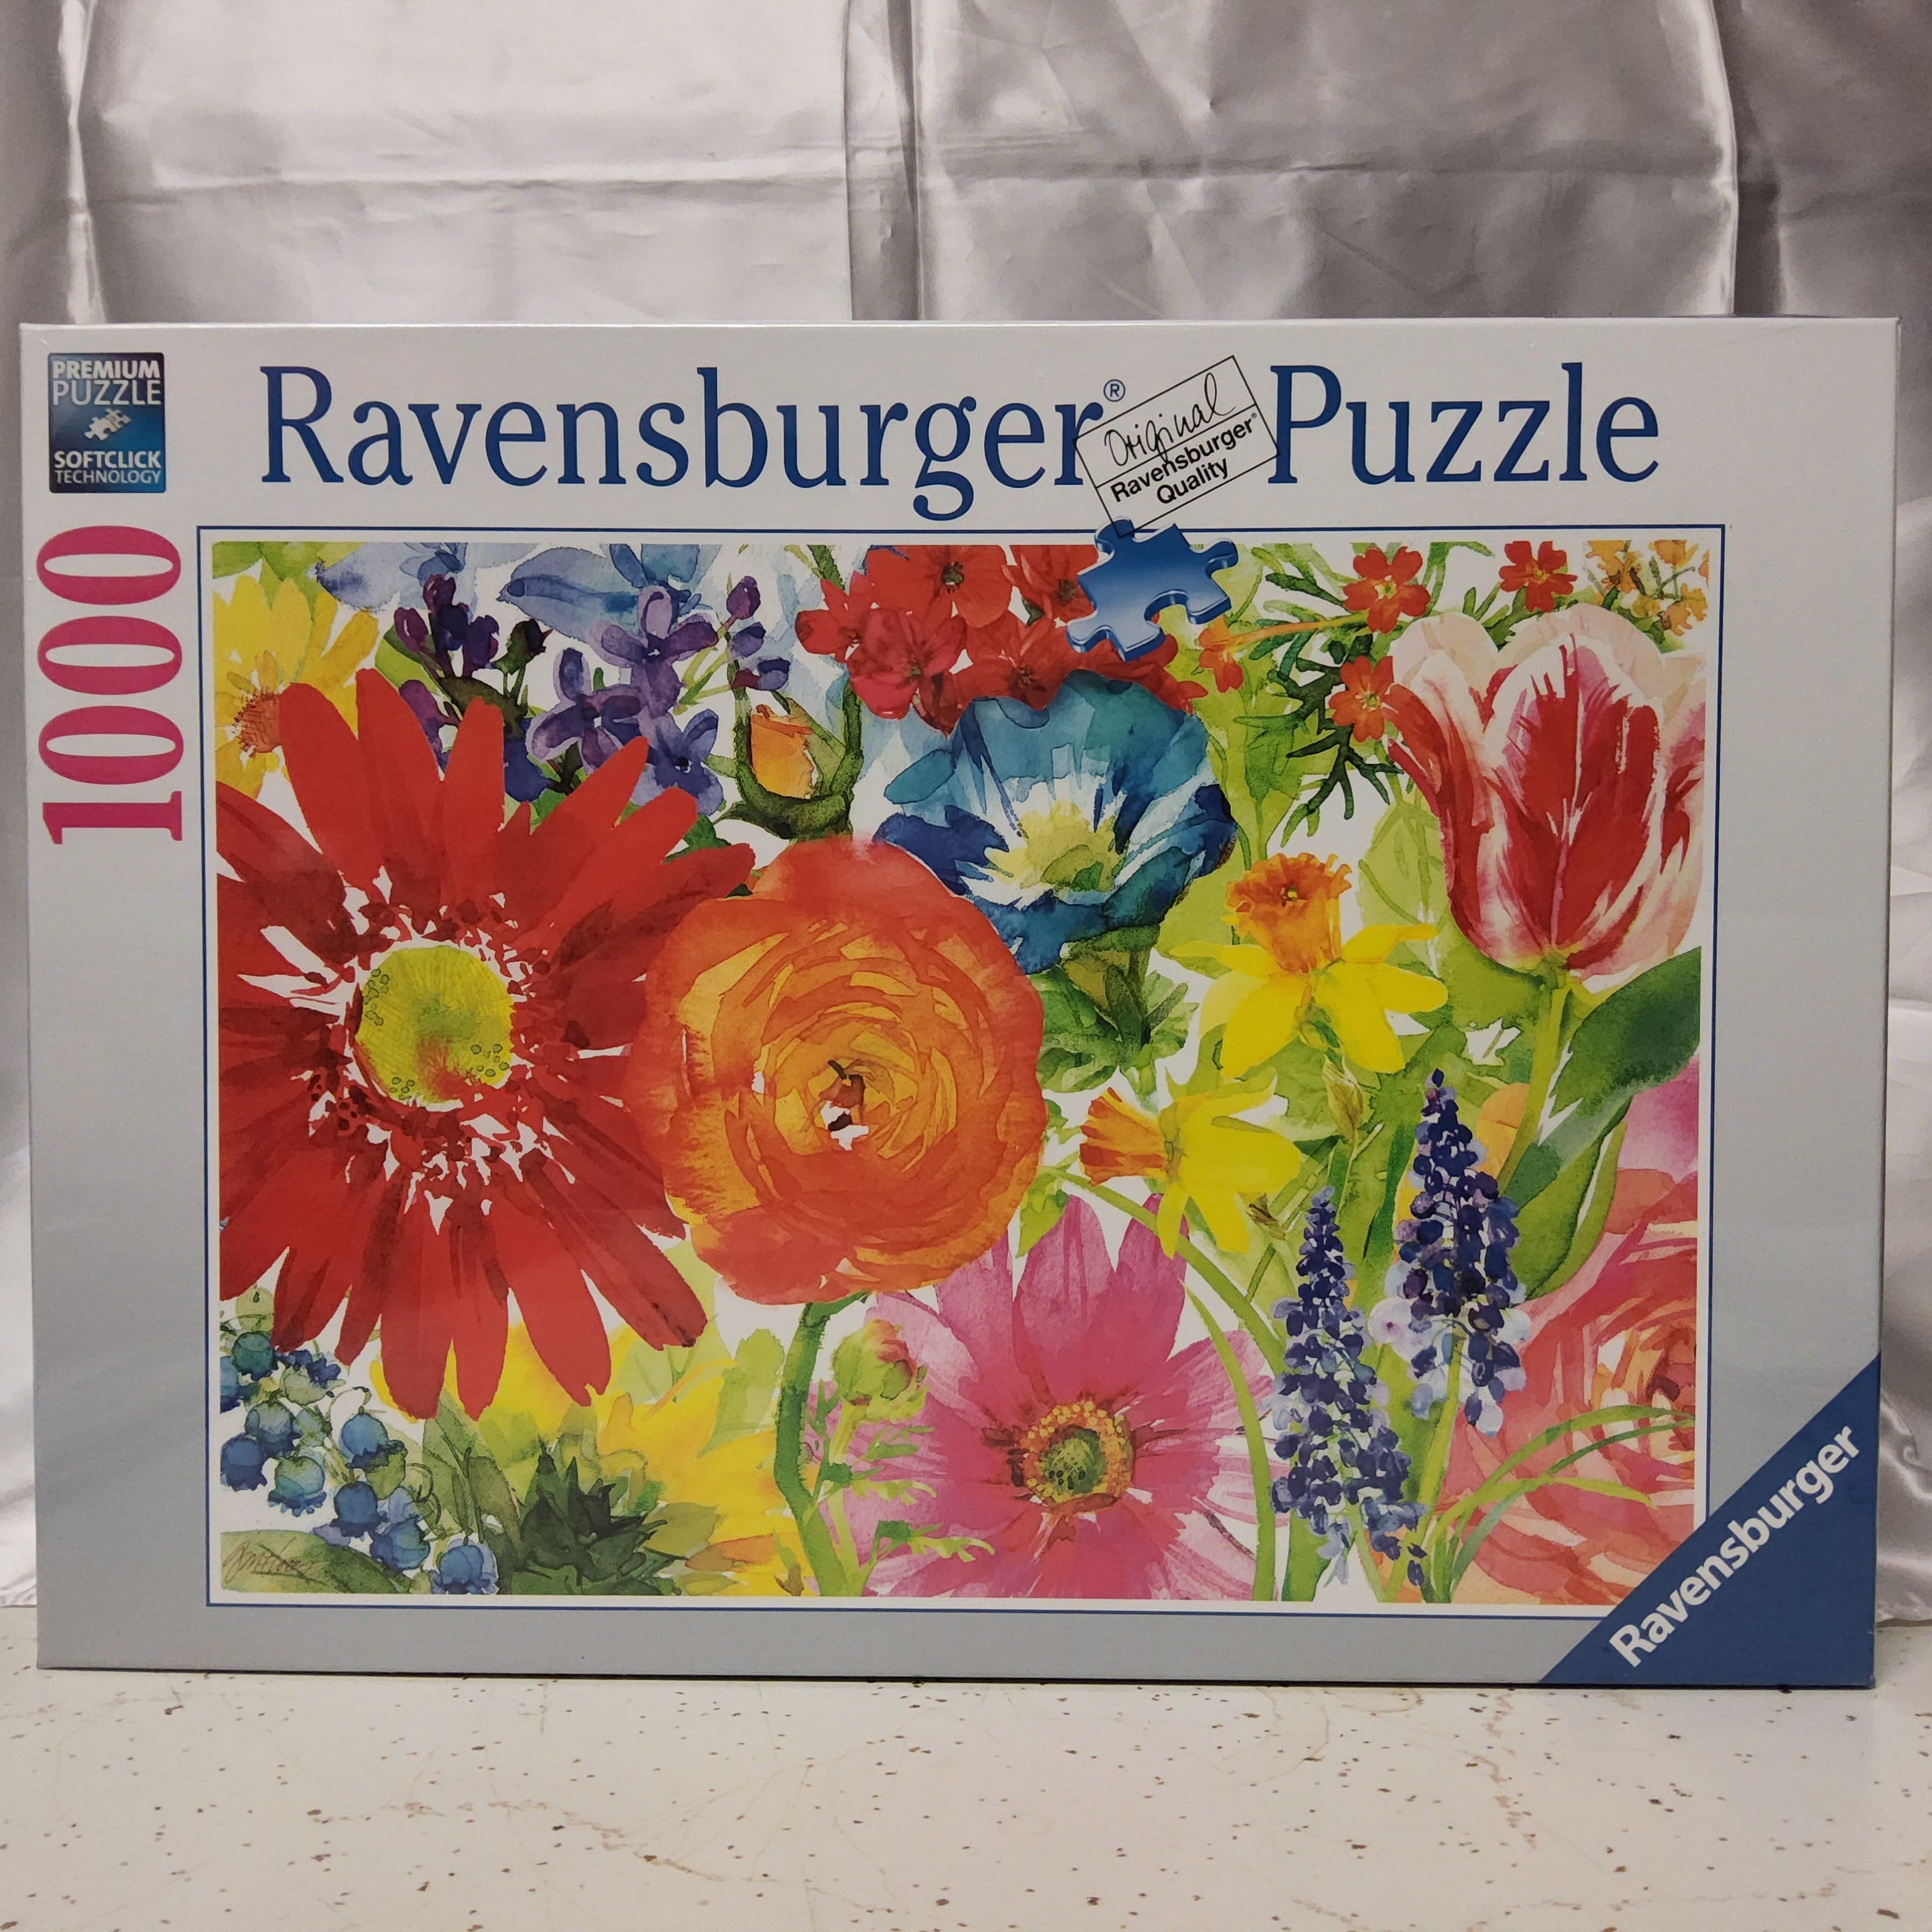 Ravensburger Puzzle - Abundant Blooms - 1000 pieces - #19729